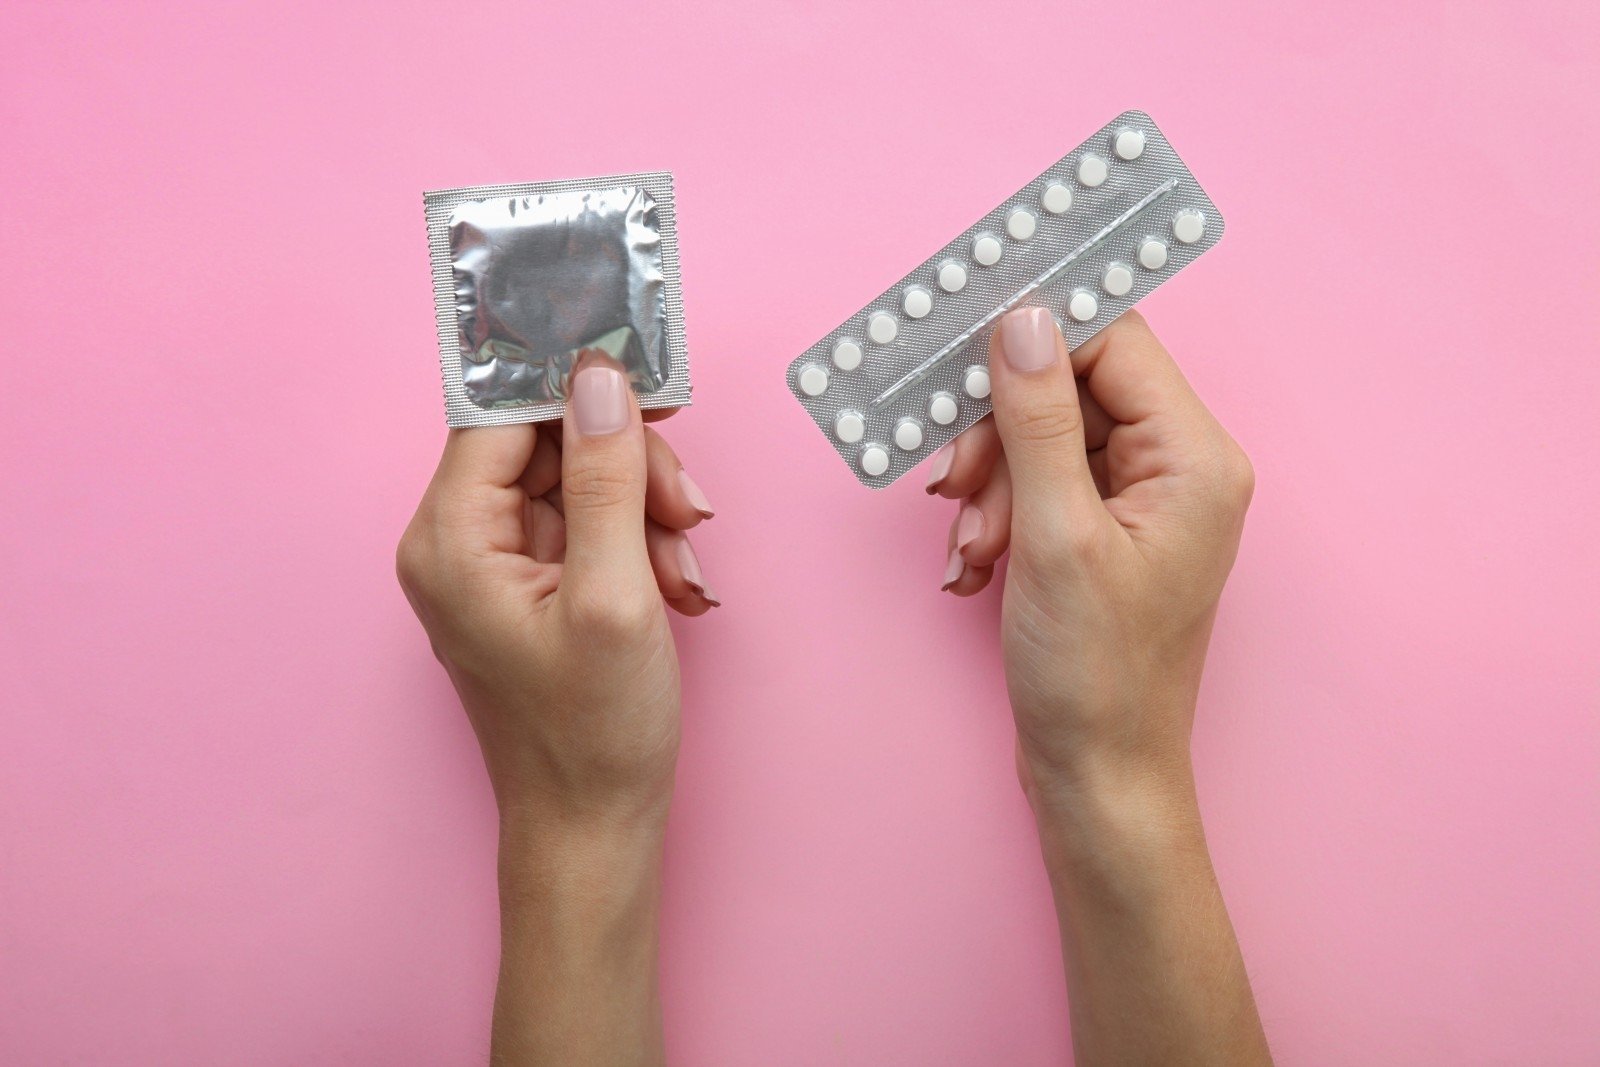 geriamieji kontraceptikai dėl kurių sumažėja svoris